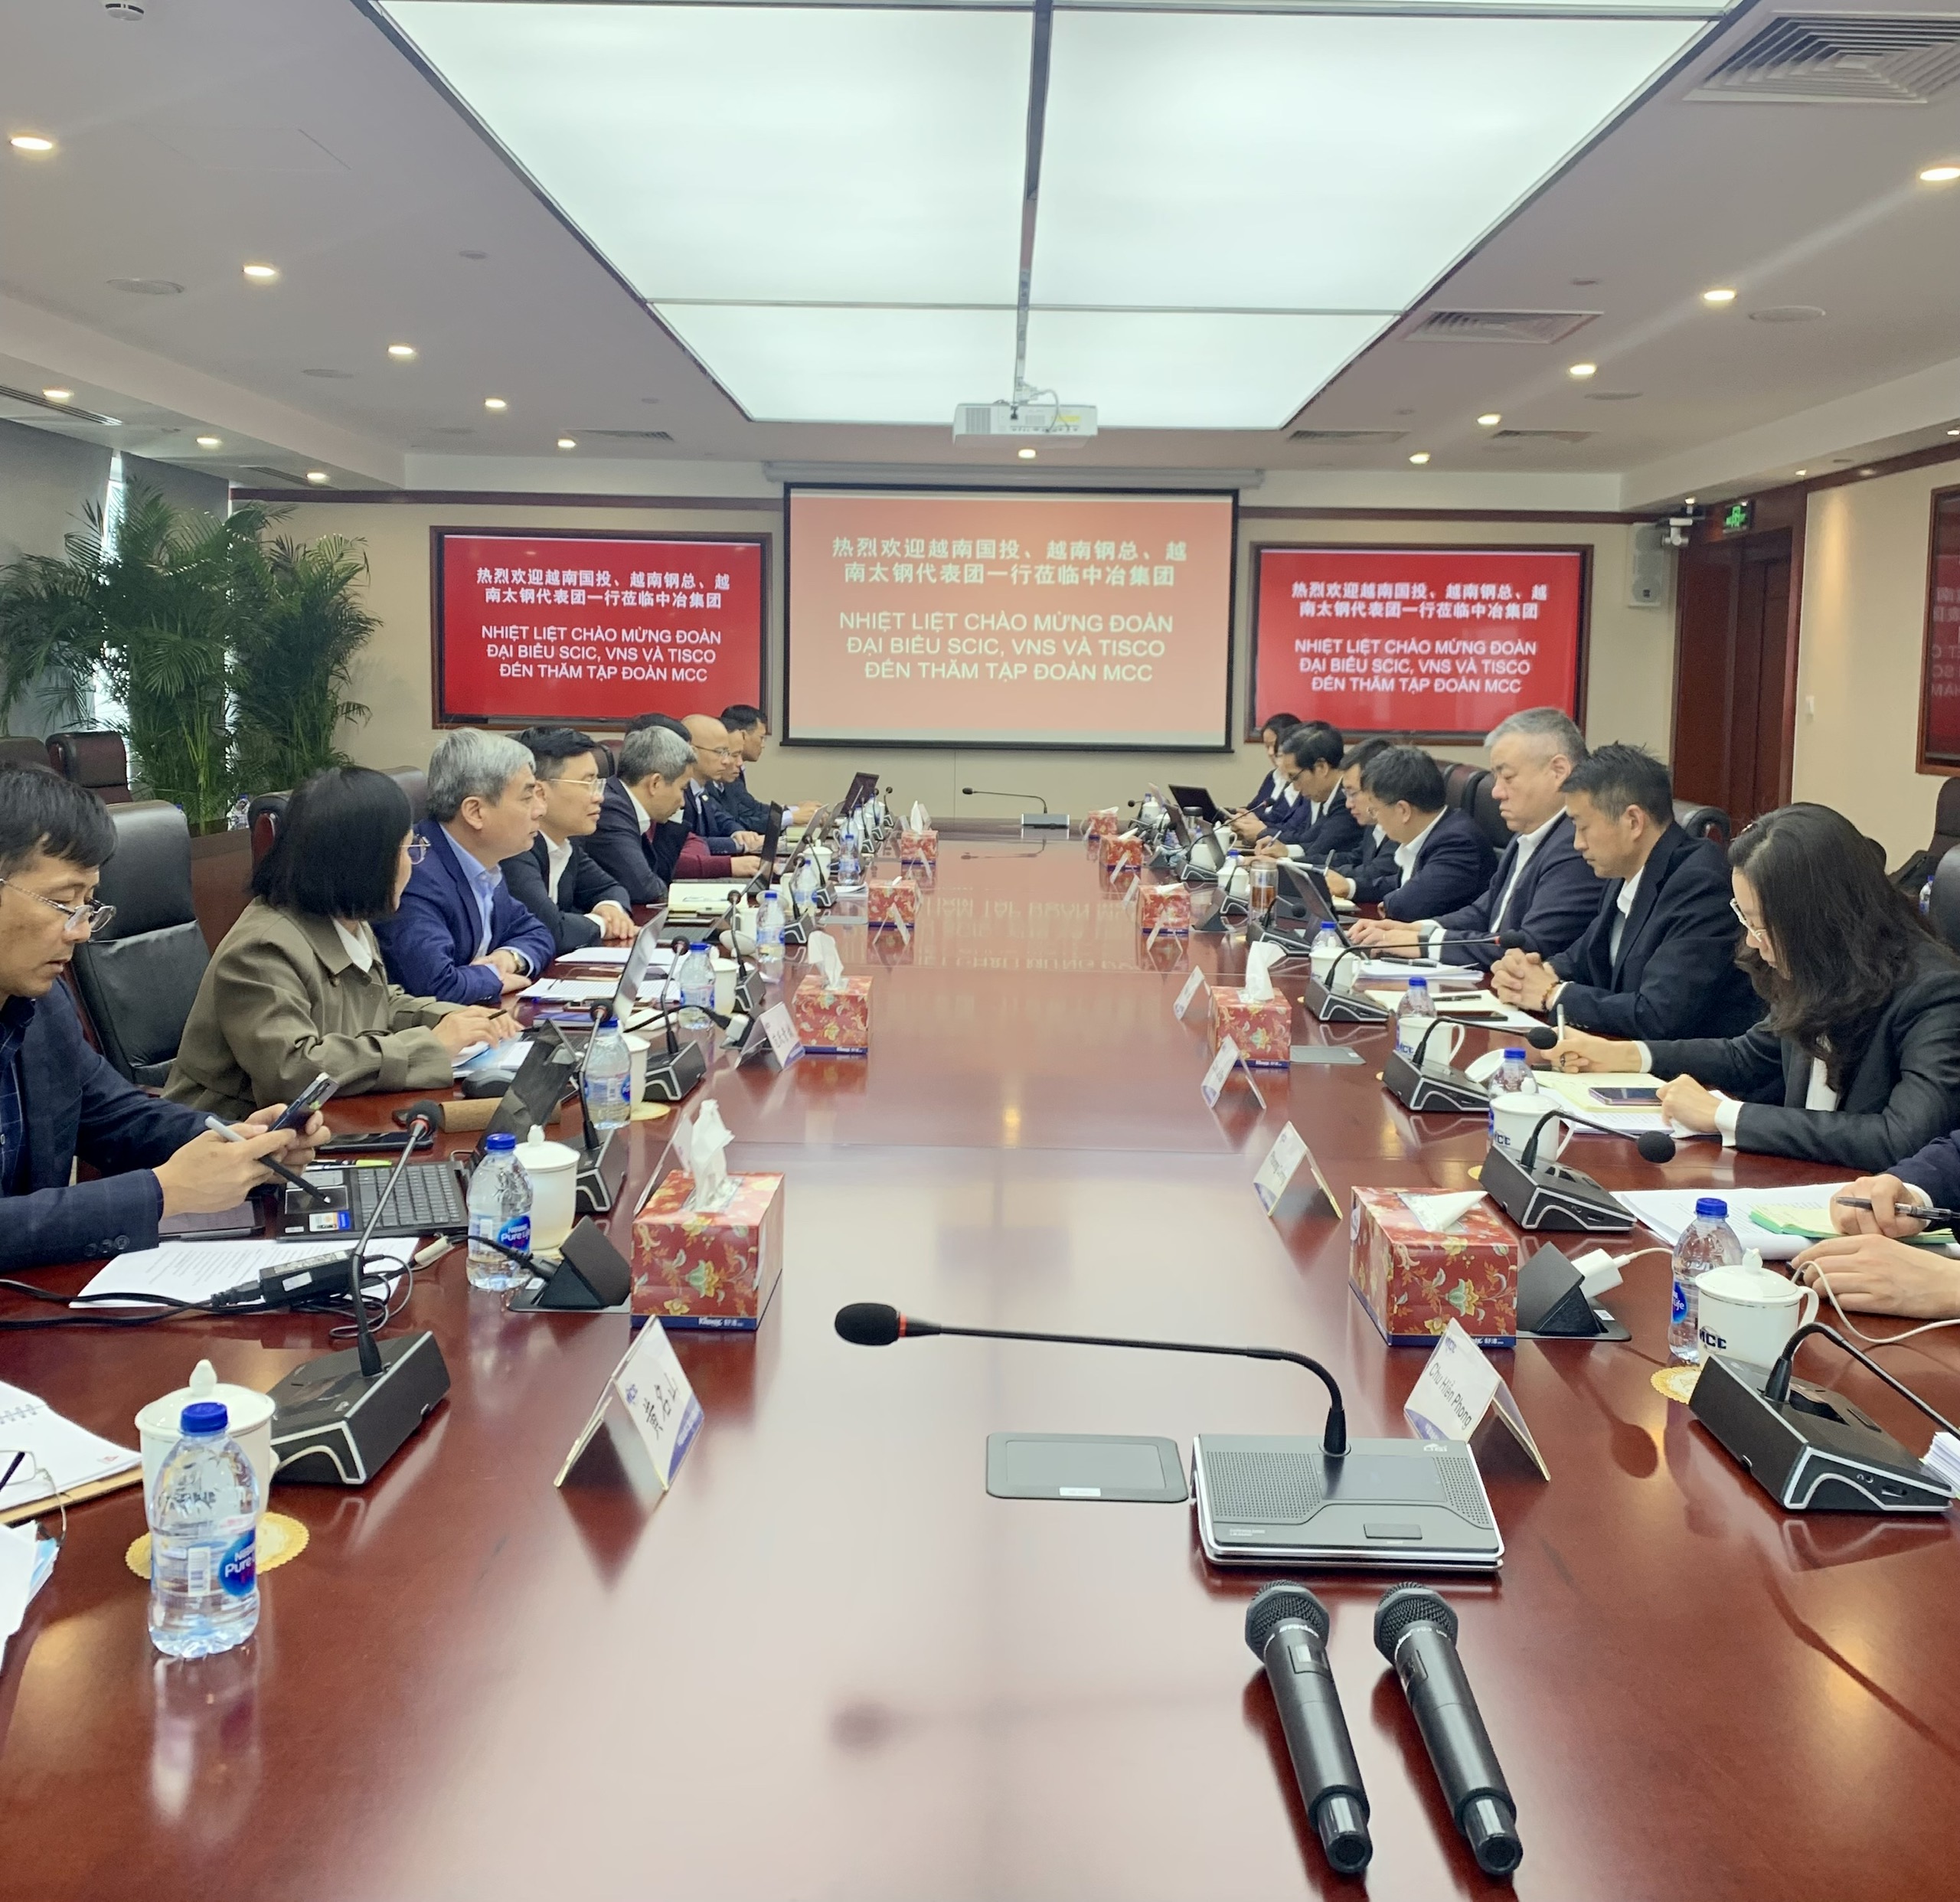 Các hoạt động trong khuôn khổ chuyến công tác của Tổng công ty Đầu tư và Kinh doanh vốn nhà nước (SCIC) tham dự đoàn công tác của Ủy ban Quản lý vốn nhà nước tại doanh nghiệp tại Trung Quốc vào tháng 03 năm 2023.